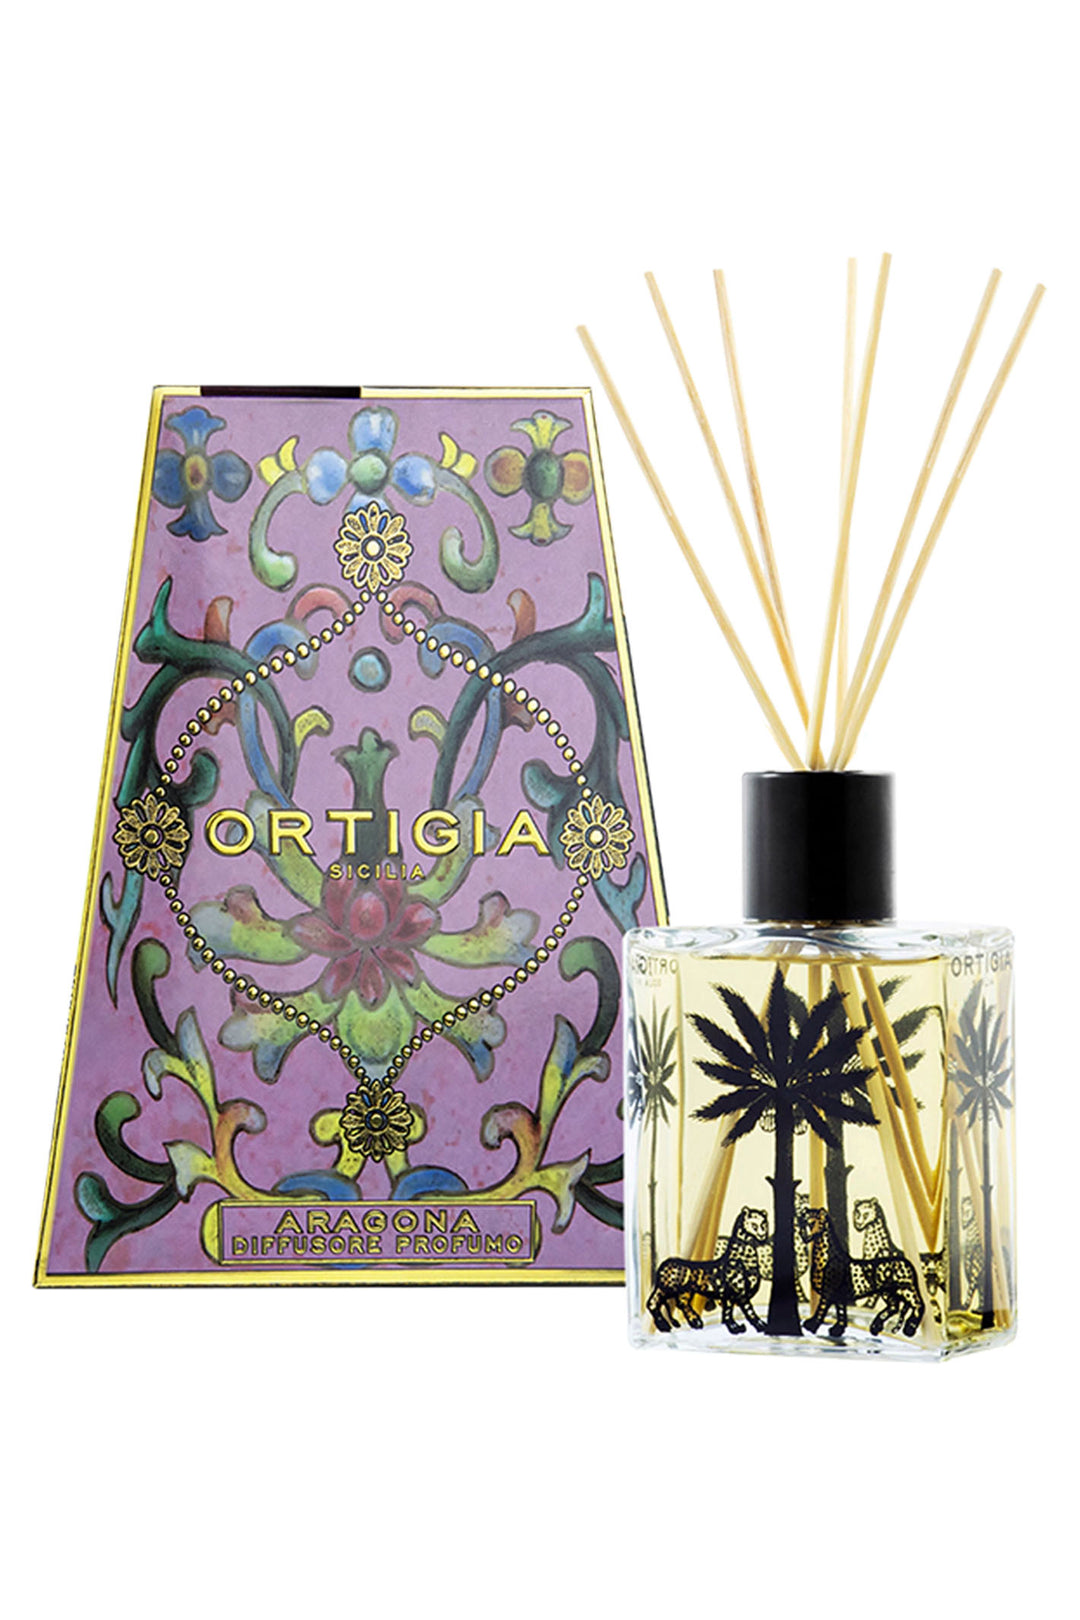 Ortigia Sicilia Aragona Perfume Diffuser 200ml - Olivia Grace Fashion